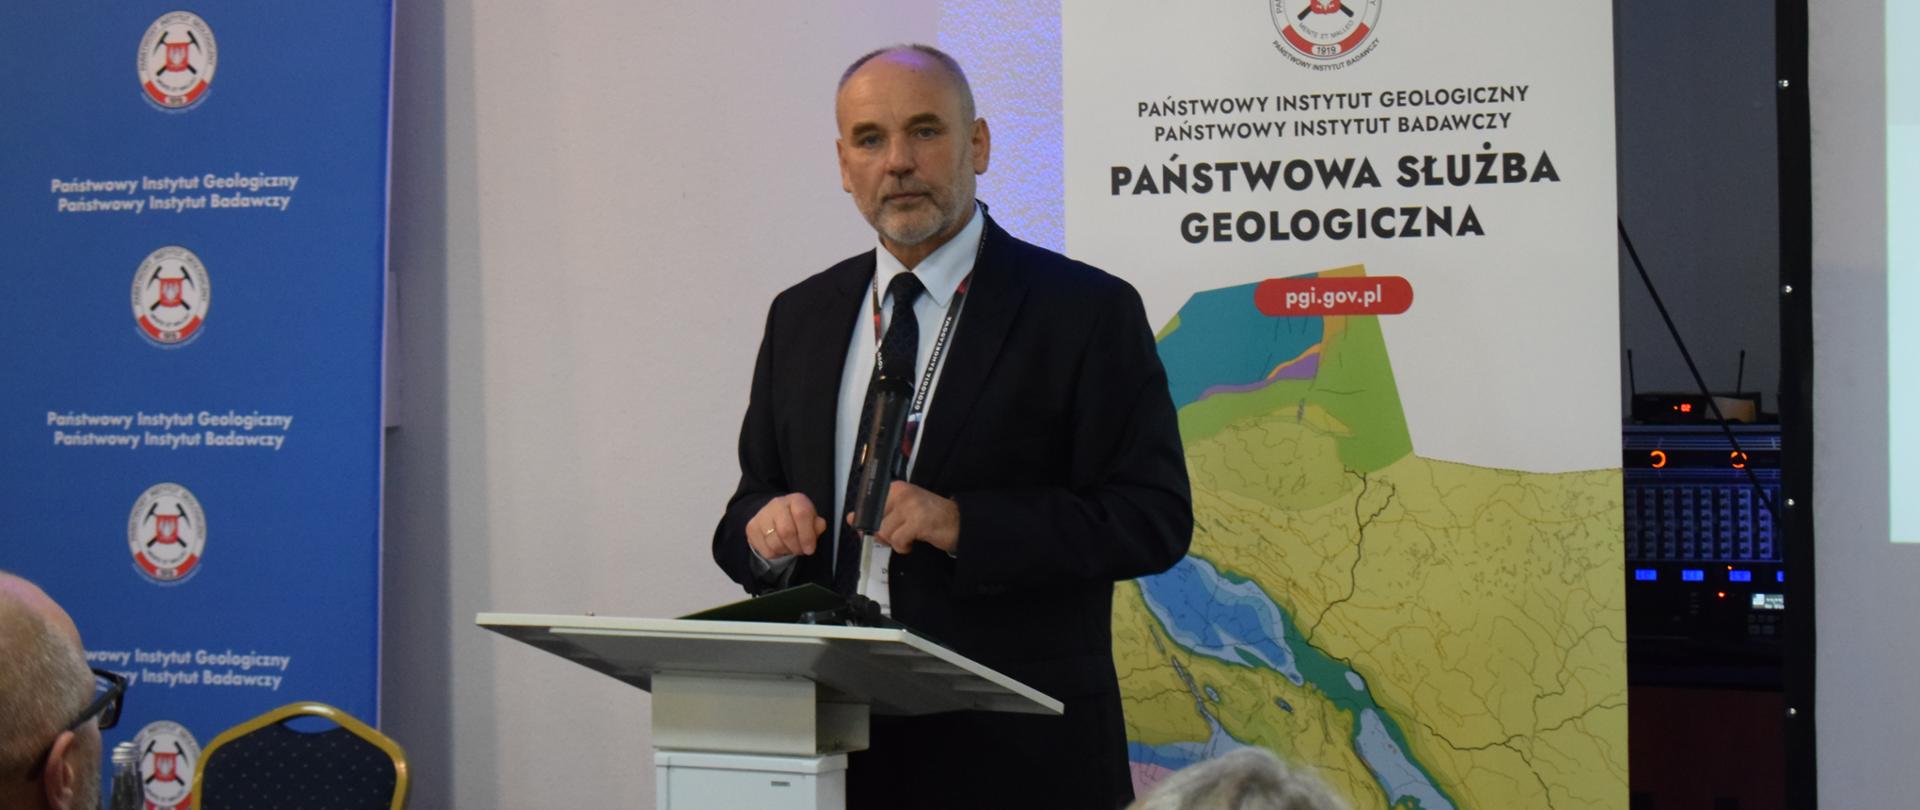 Wiceminister Piotr Dziadzio na konferencji „Współczesna Geologia Samorządowa”, organizowanej przez Państwowy Instytut Geologiczny-Państwowy Instytut Badawczy